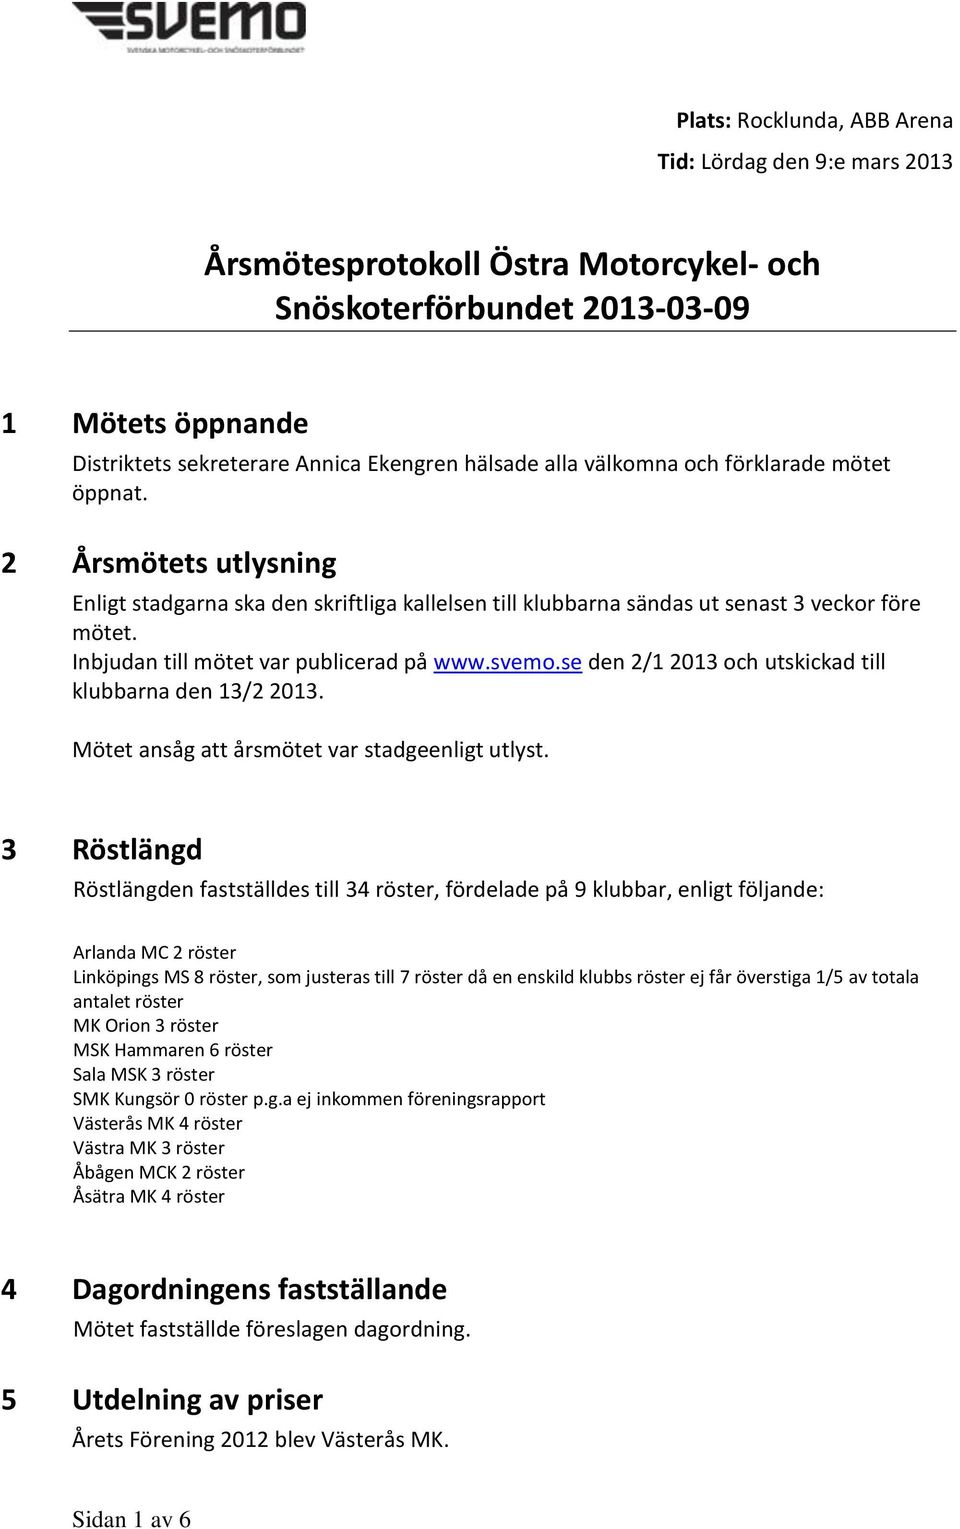 Inbjudan till mötet var publicerad på www.svemo.se den 2/1 2013 och utskickad till klubbarna den 13/2 2013. Mötet ansåg att årsmötet var stadgeenligt utlyst.